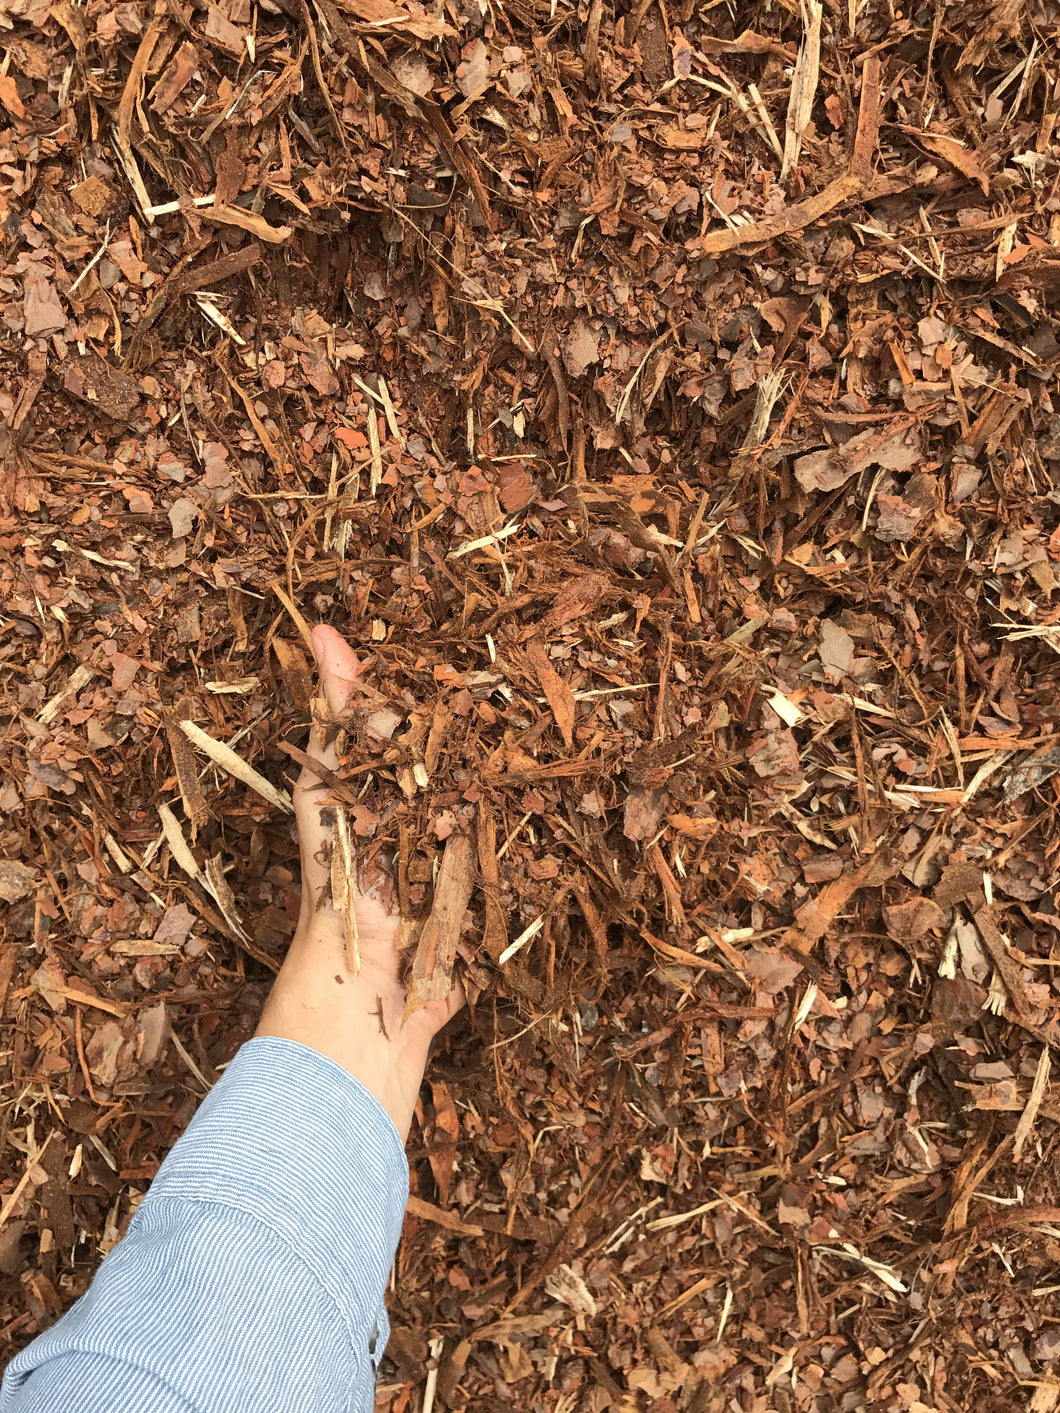 Shredded Pine Mulch